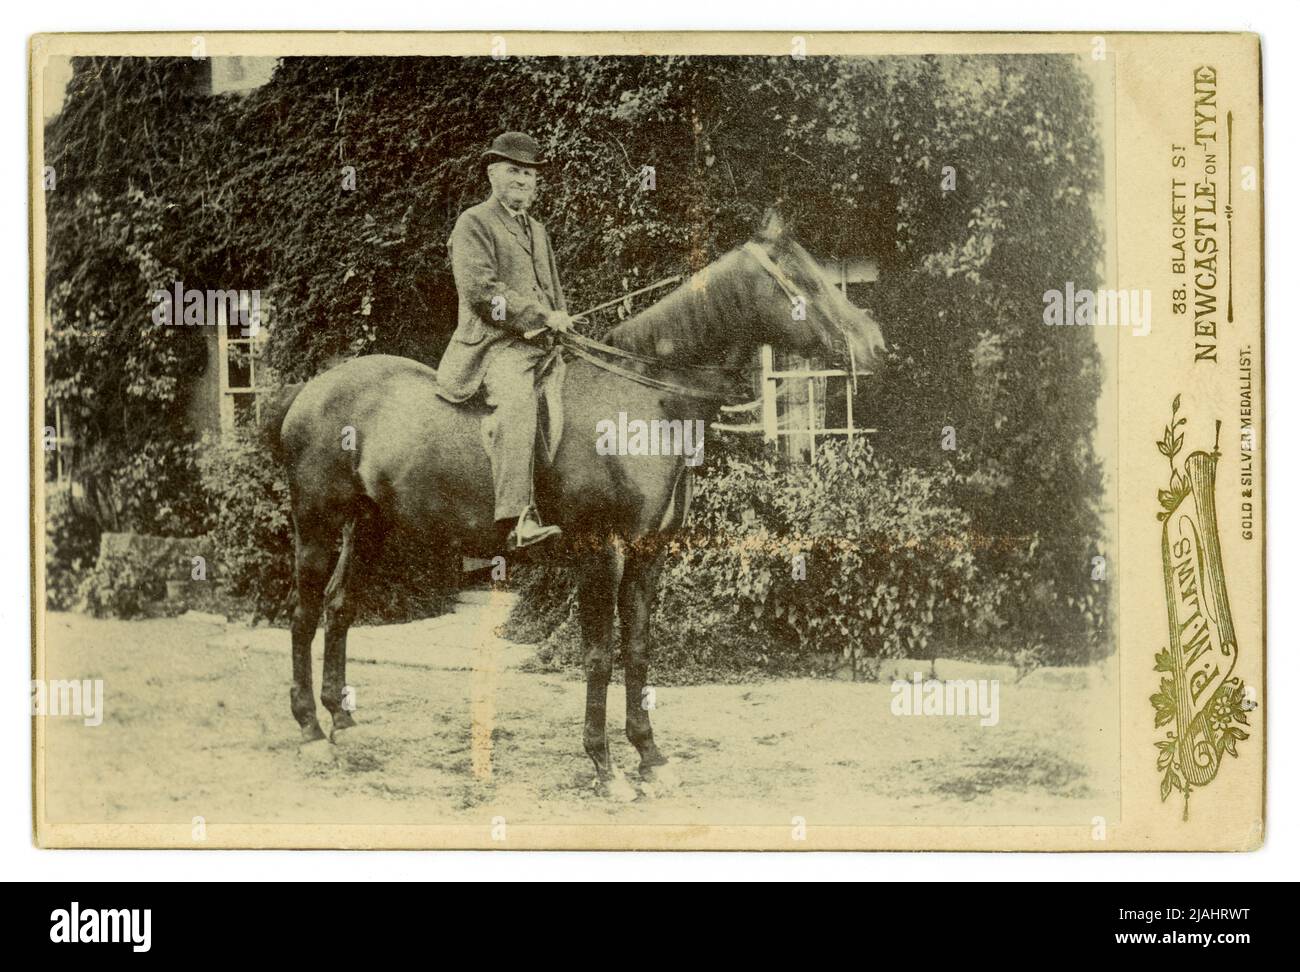 Original charmante Kabinettkarte im Freien Porträt eines Landherrn auf seinem Pferd vor seinem Haus, fotografiert von P.M. Laws, 38 Blackett St. Newcastle-upon-Tyne, England, Großbritannien Ende der 1880er, Anfang der 1890er. Stockfoto